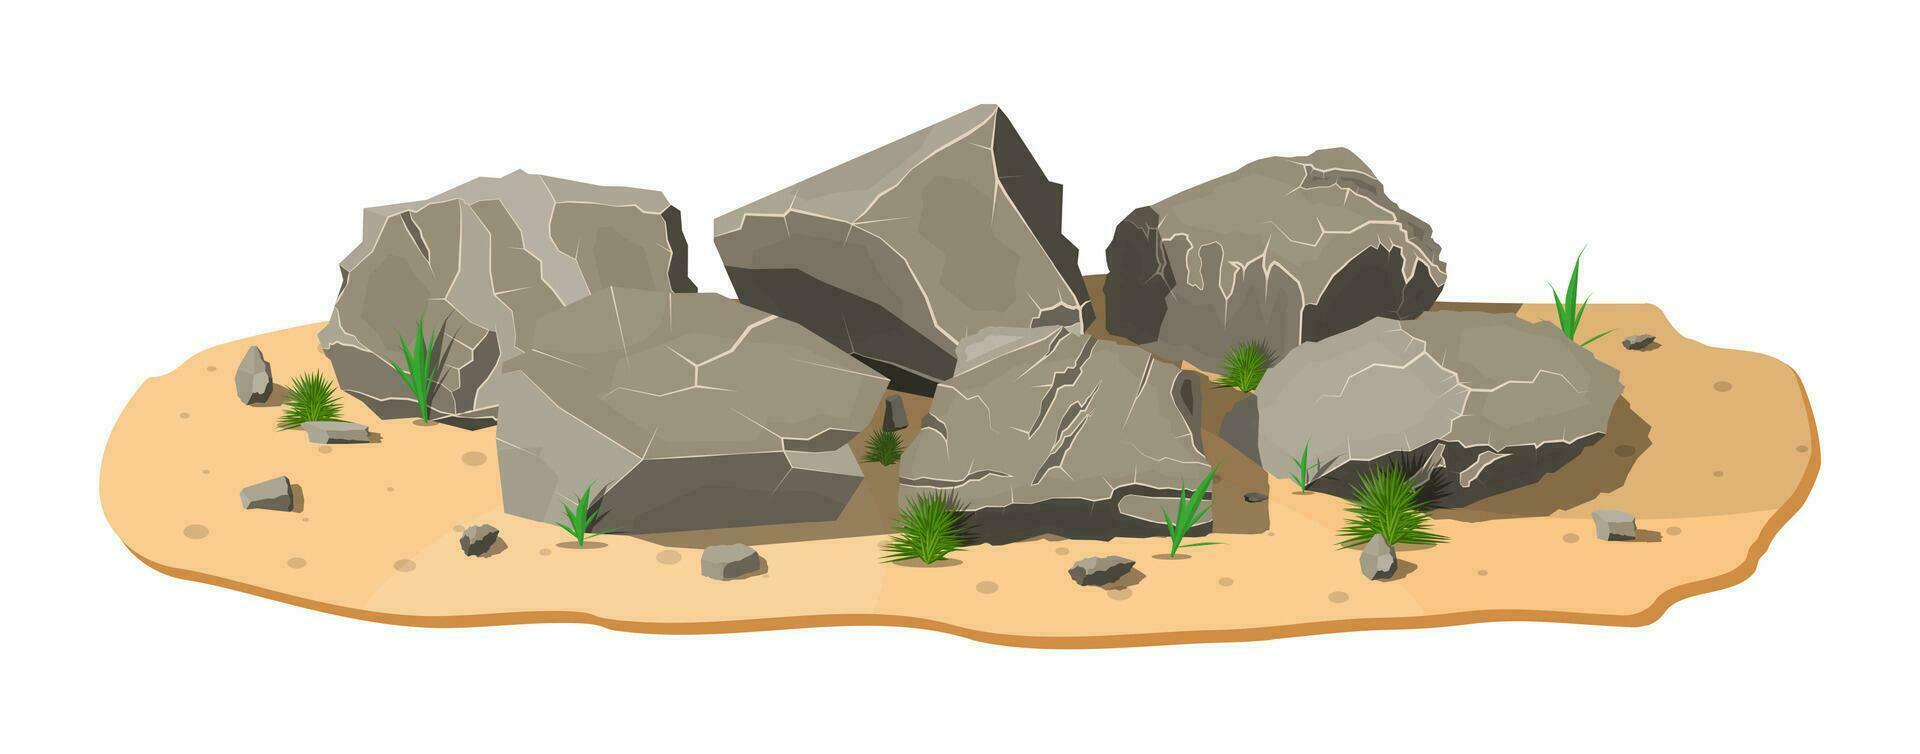 Stapel von Felsen Stein mit Gras auf Sand. Steine und Felsen im variuos Größen. einstellen von anders Felsbrocken. Vektor Illustration im eben Stil